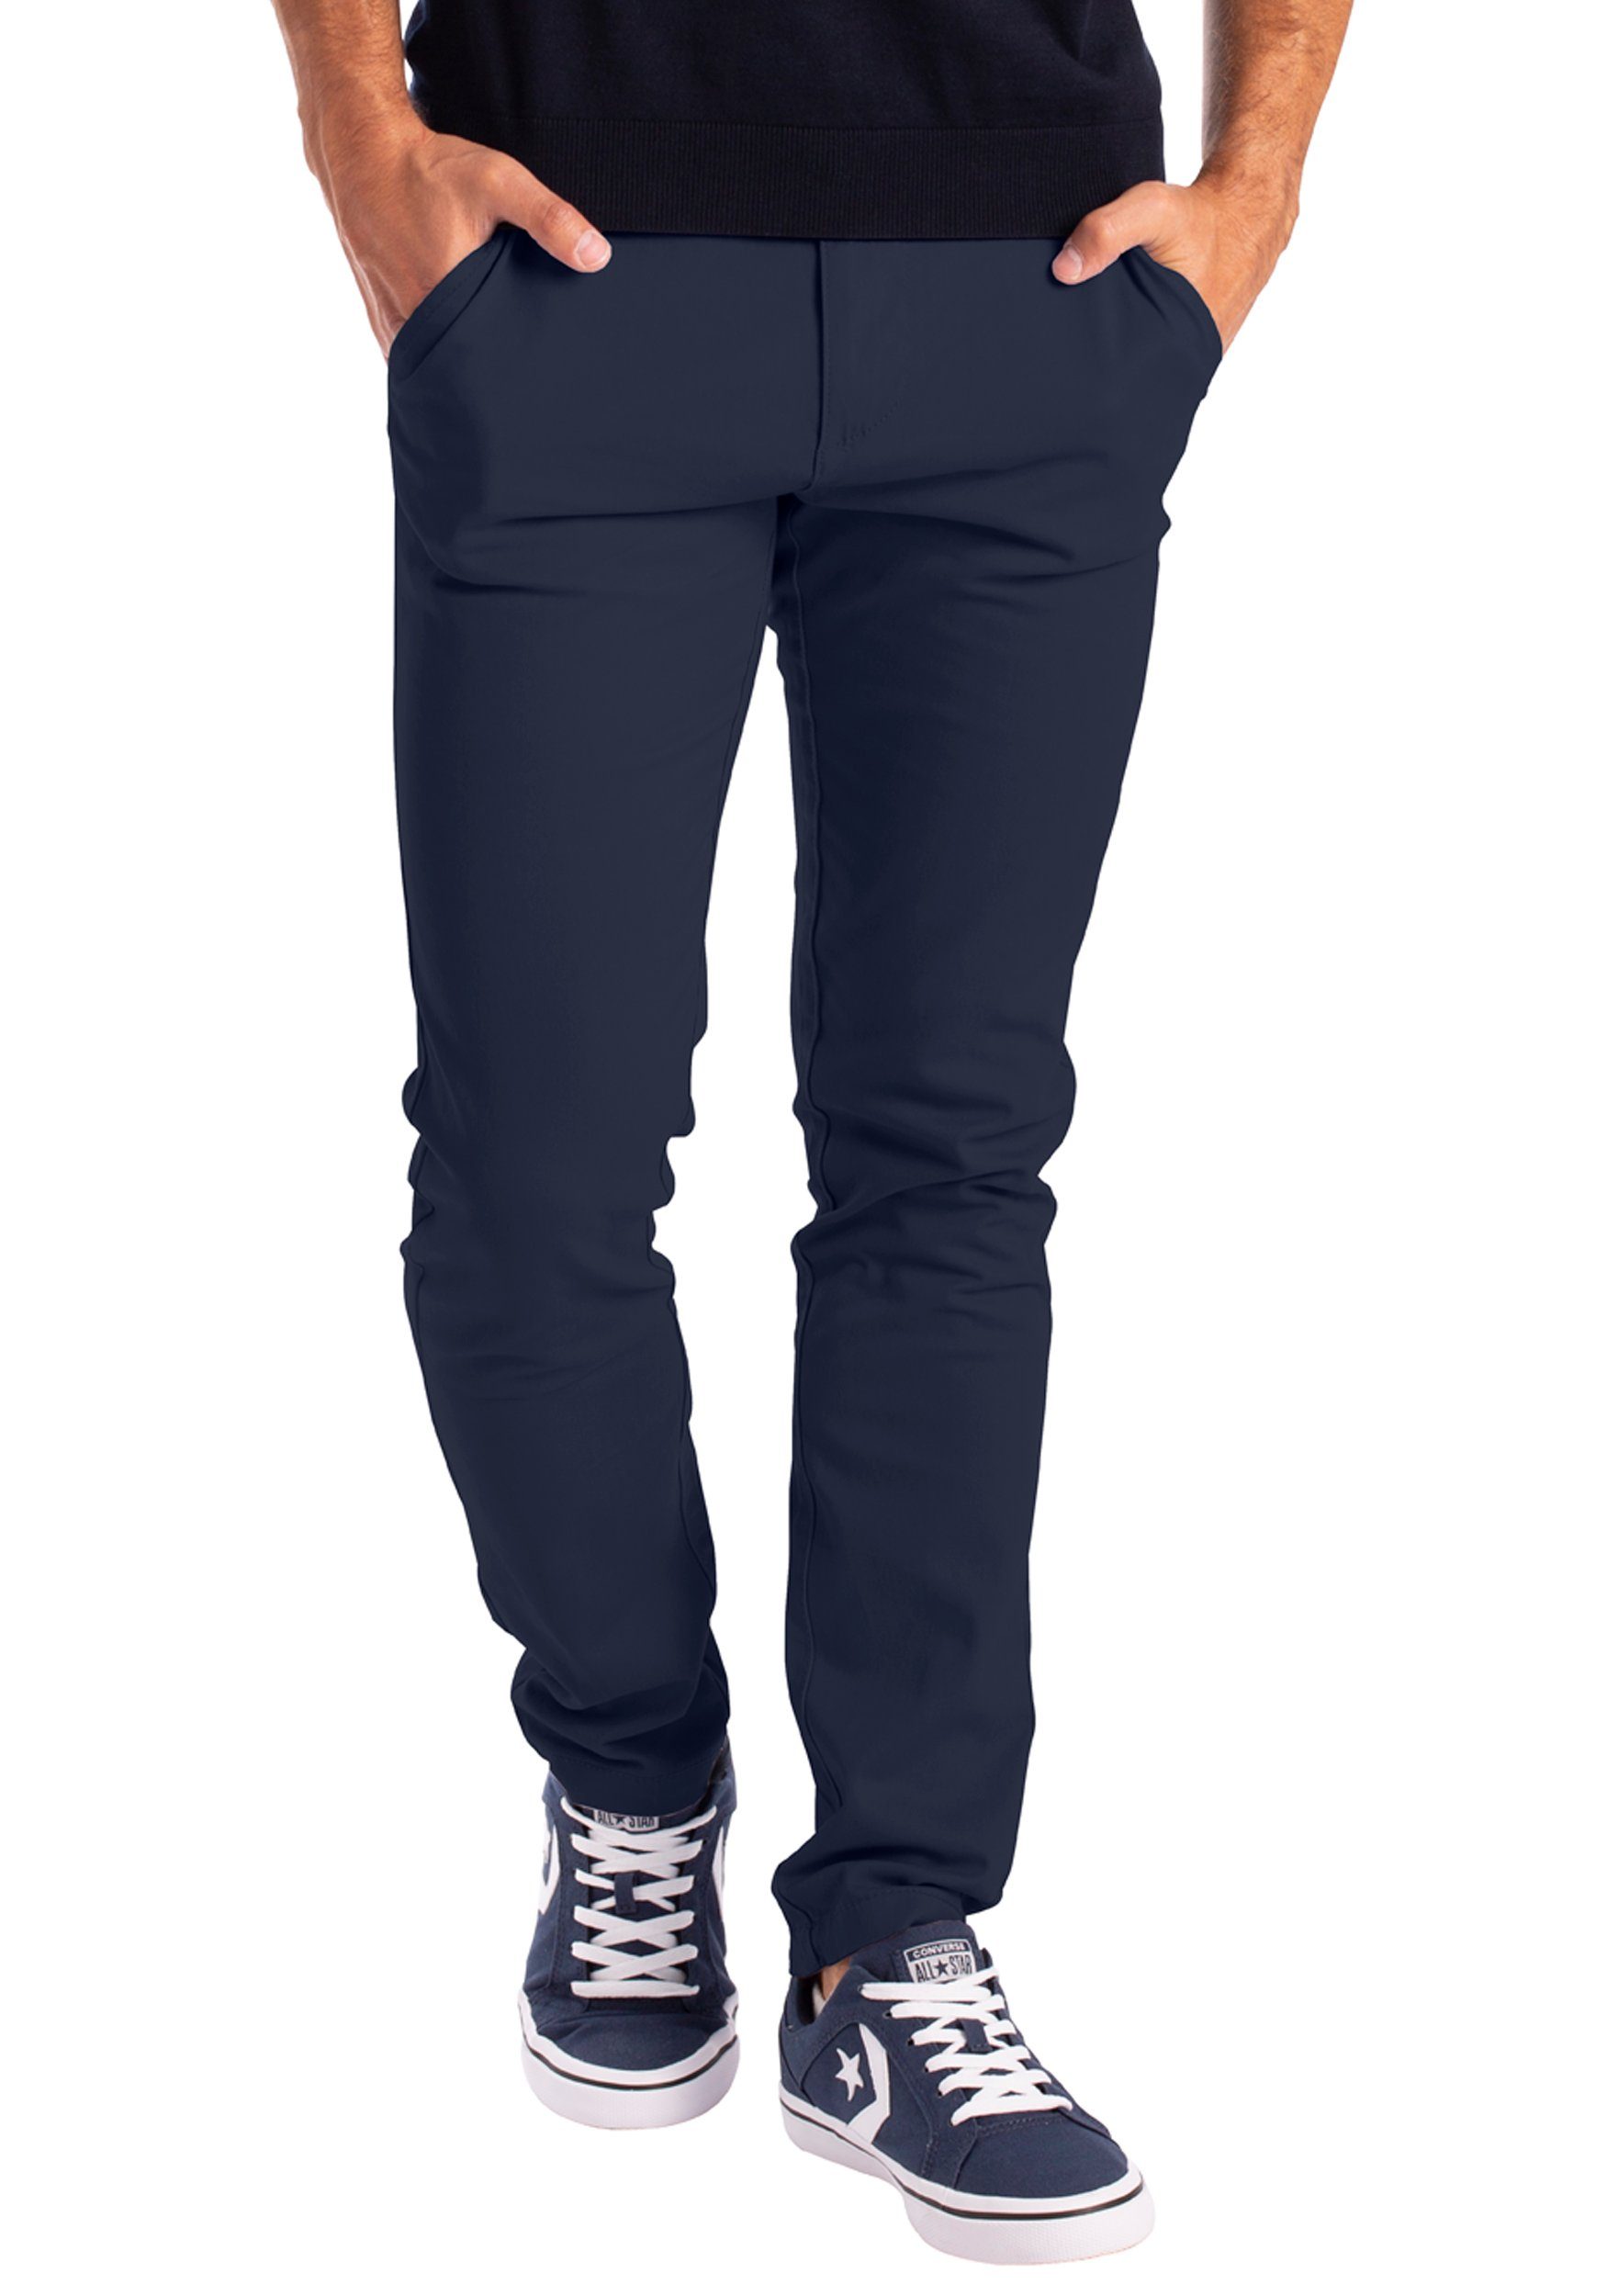 BlauerHafen Chinohose Herren Chino Hose Stretch Stoff Chinohose Slim Fit Casual Trousers 4 Taschen (2 Vorder- und 2 Gesäßtaschen) Navy | Slim-Hosen